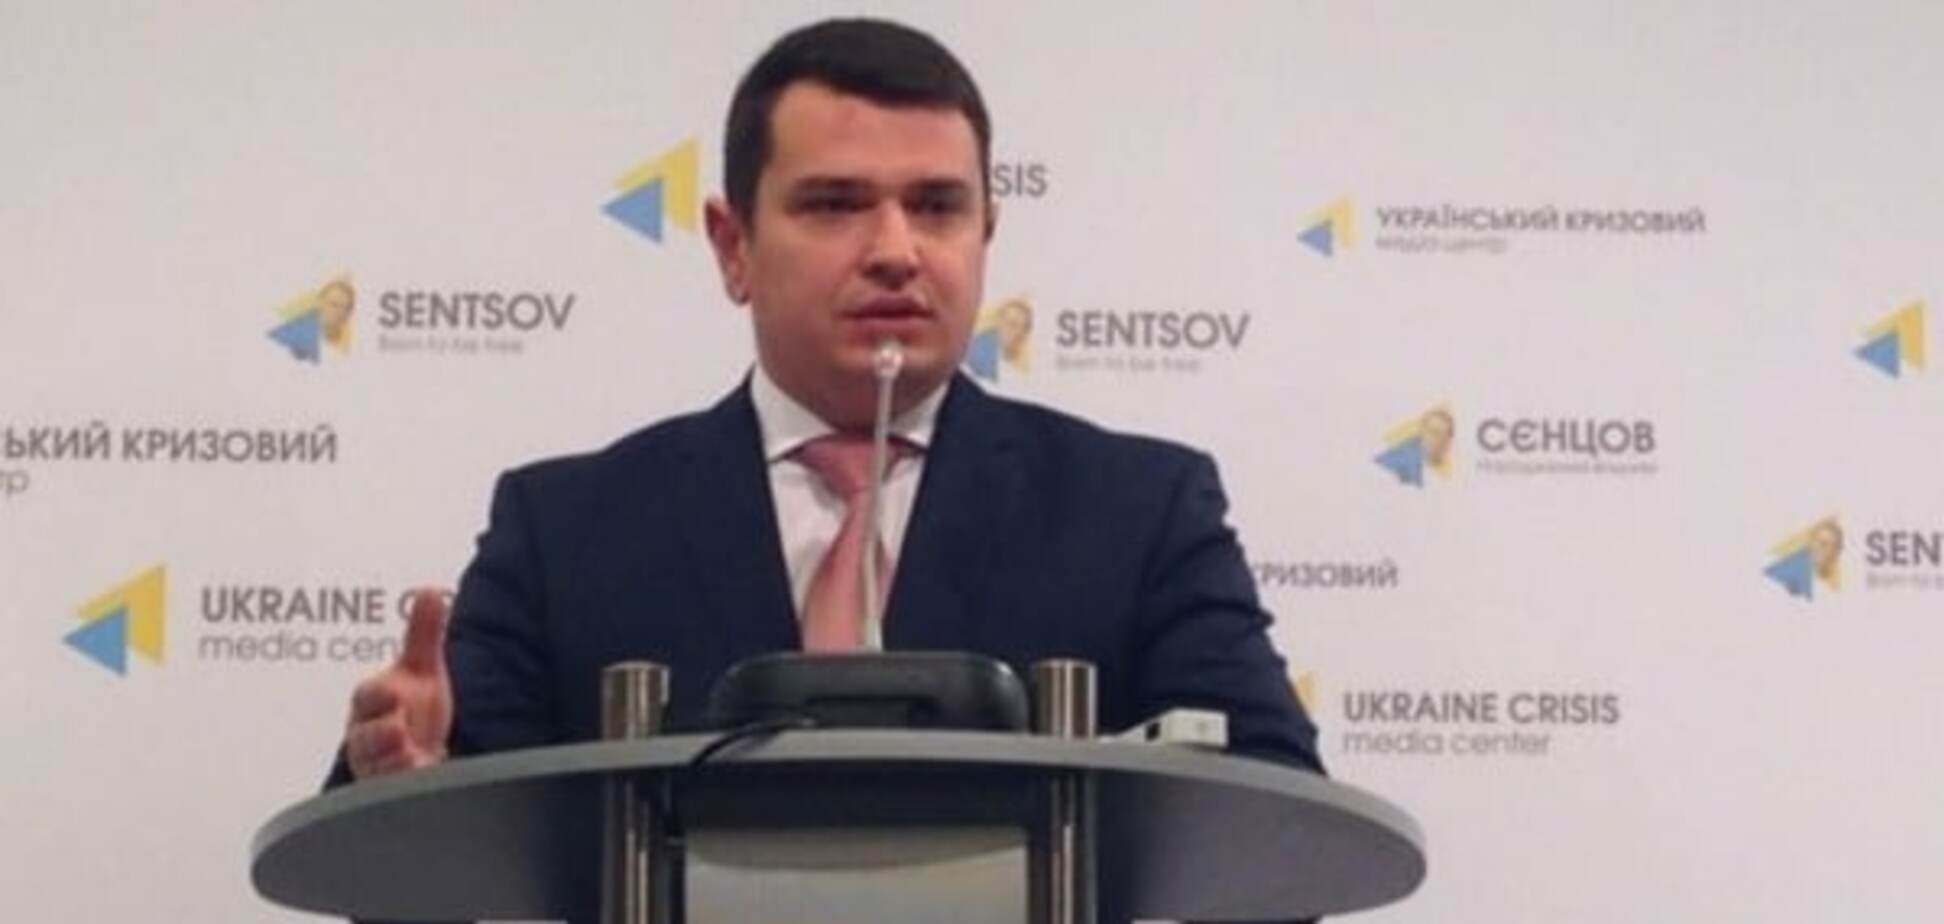 Збитки України від корупційних схем складають 1 мільярд - глава НАБУ